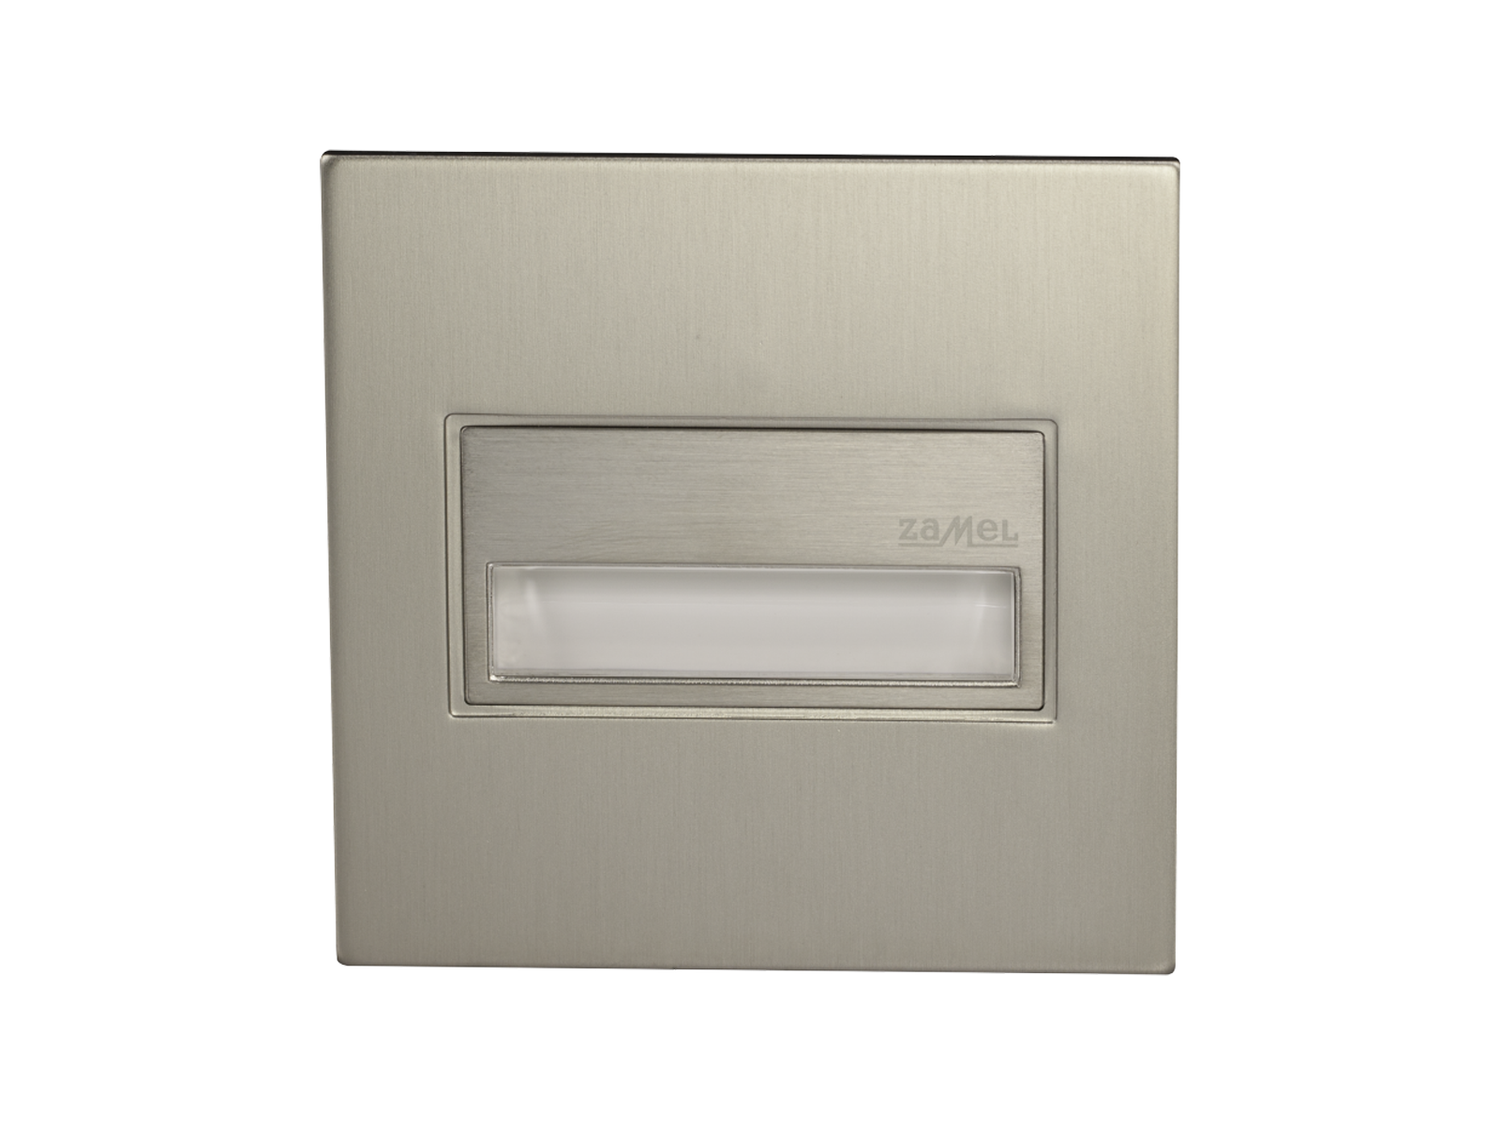 Svítidlo LED do KU krabice pod omítku LEDIX SONA 14V DC, kartáčovaná ocel, studená bílá, IP44